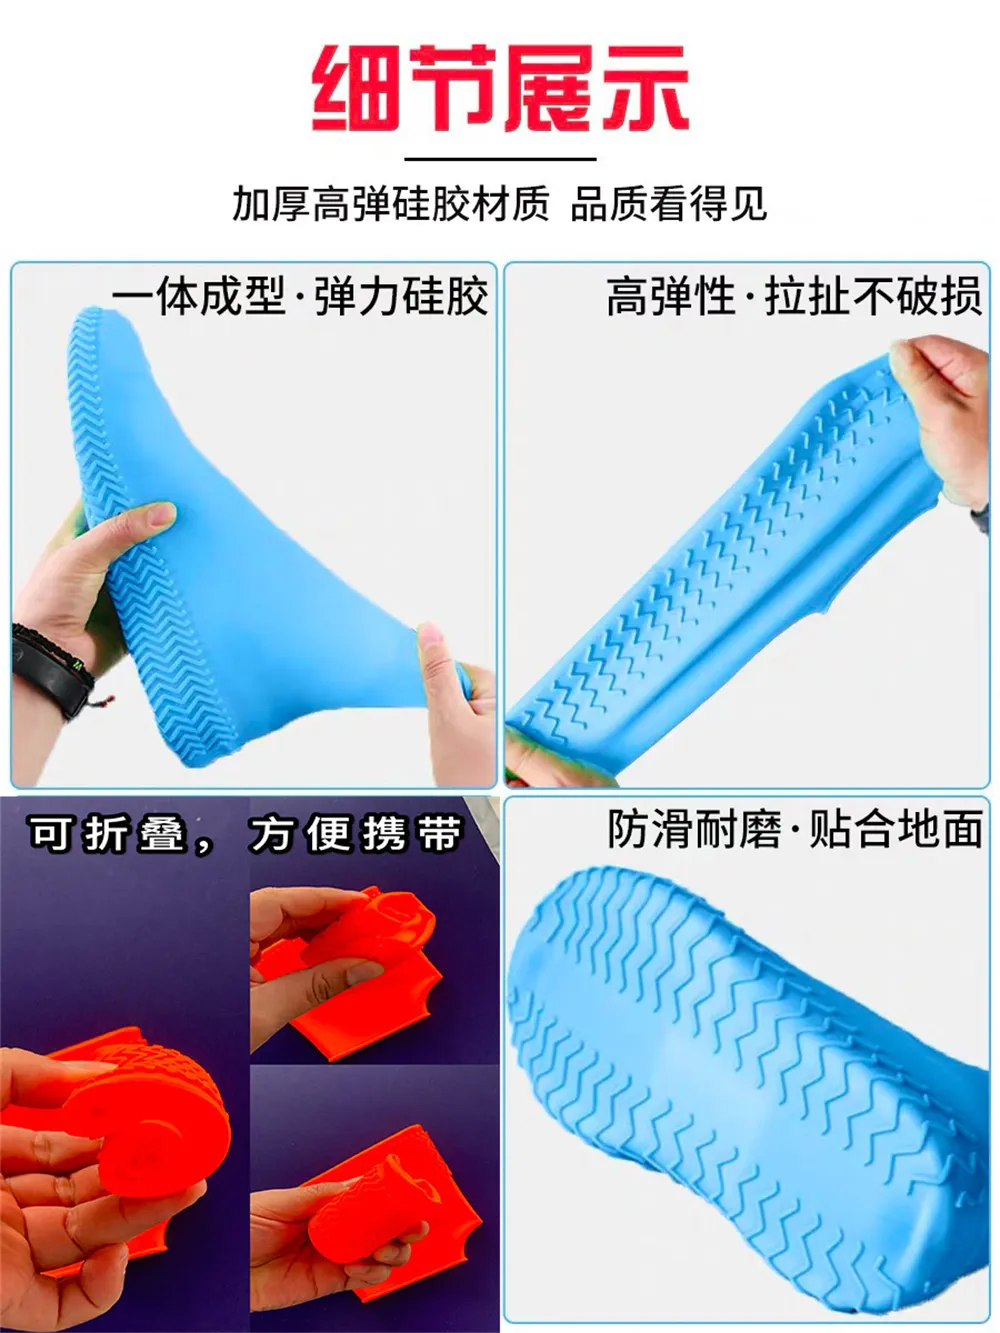 Nouveaux couvre-chaussures en silicone imperméables et anti-pluie résistants à l'usure bottes de pluie portables anti-pluie couvre-chaussures pour hommes et femmes en gros